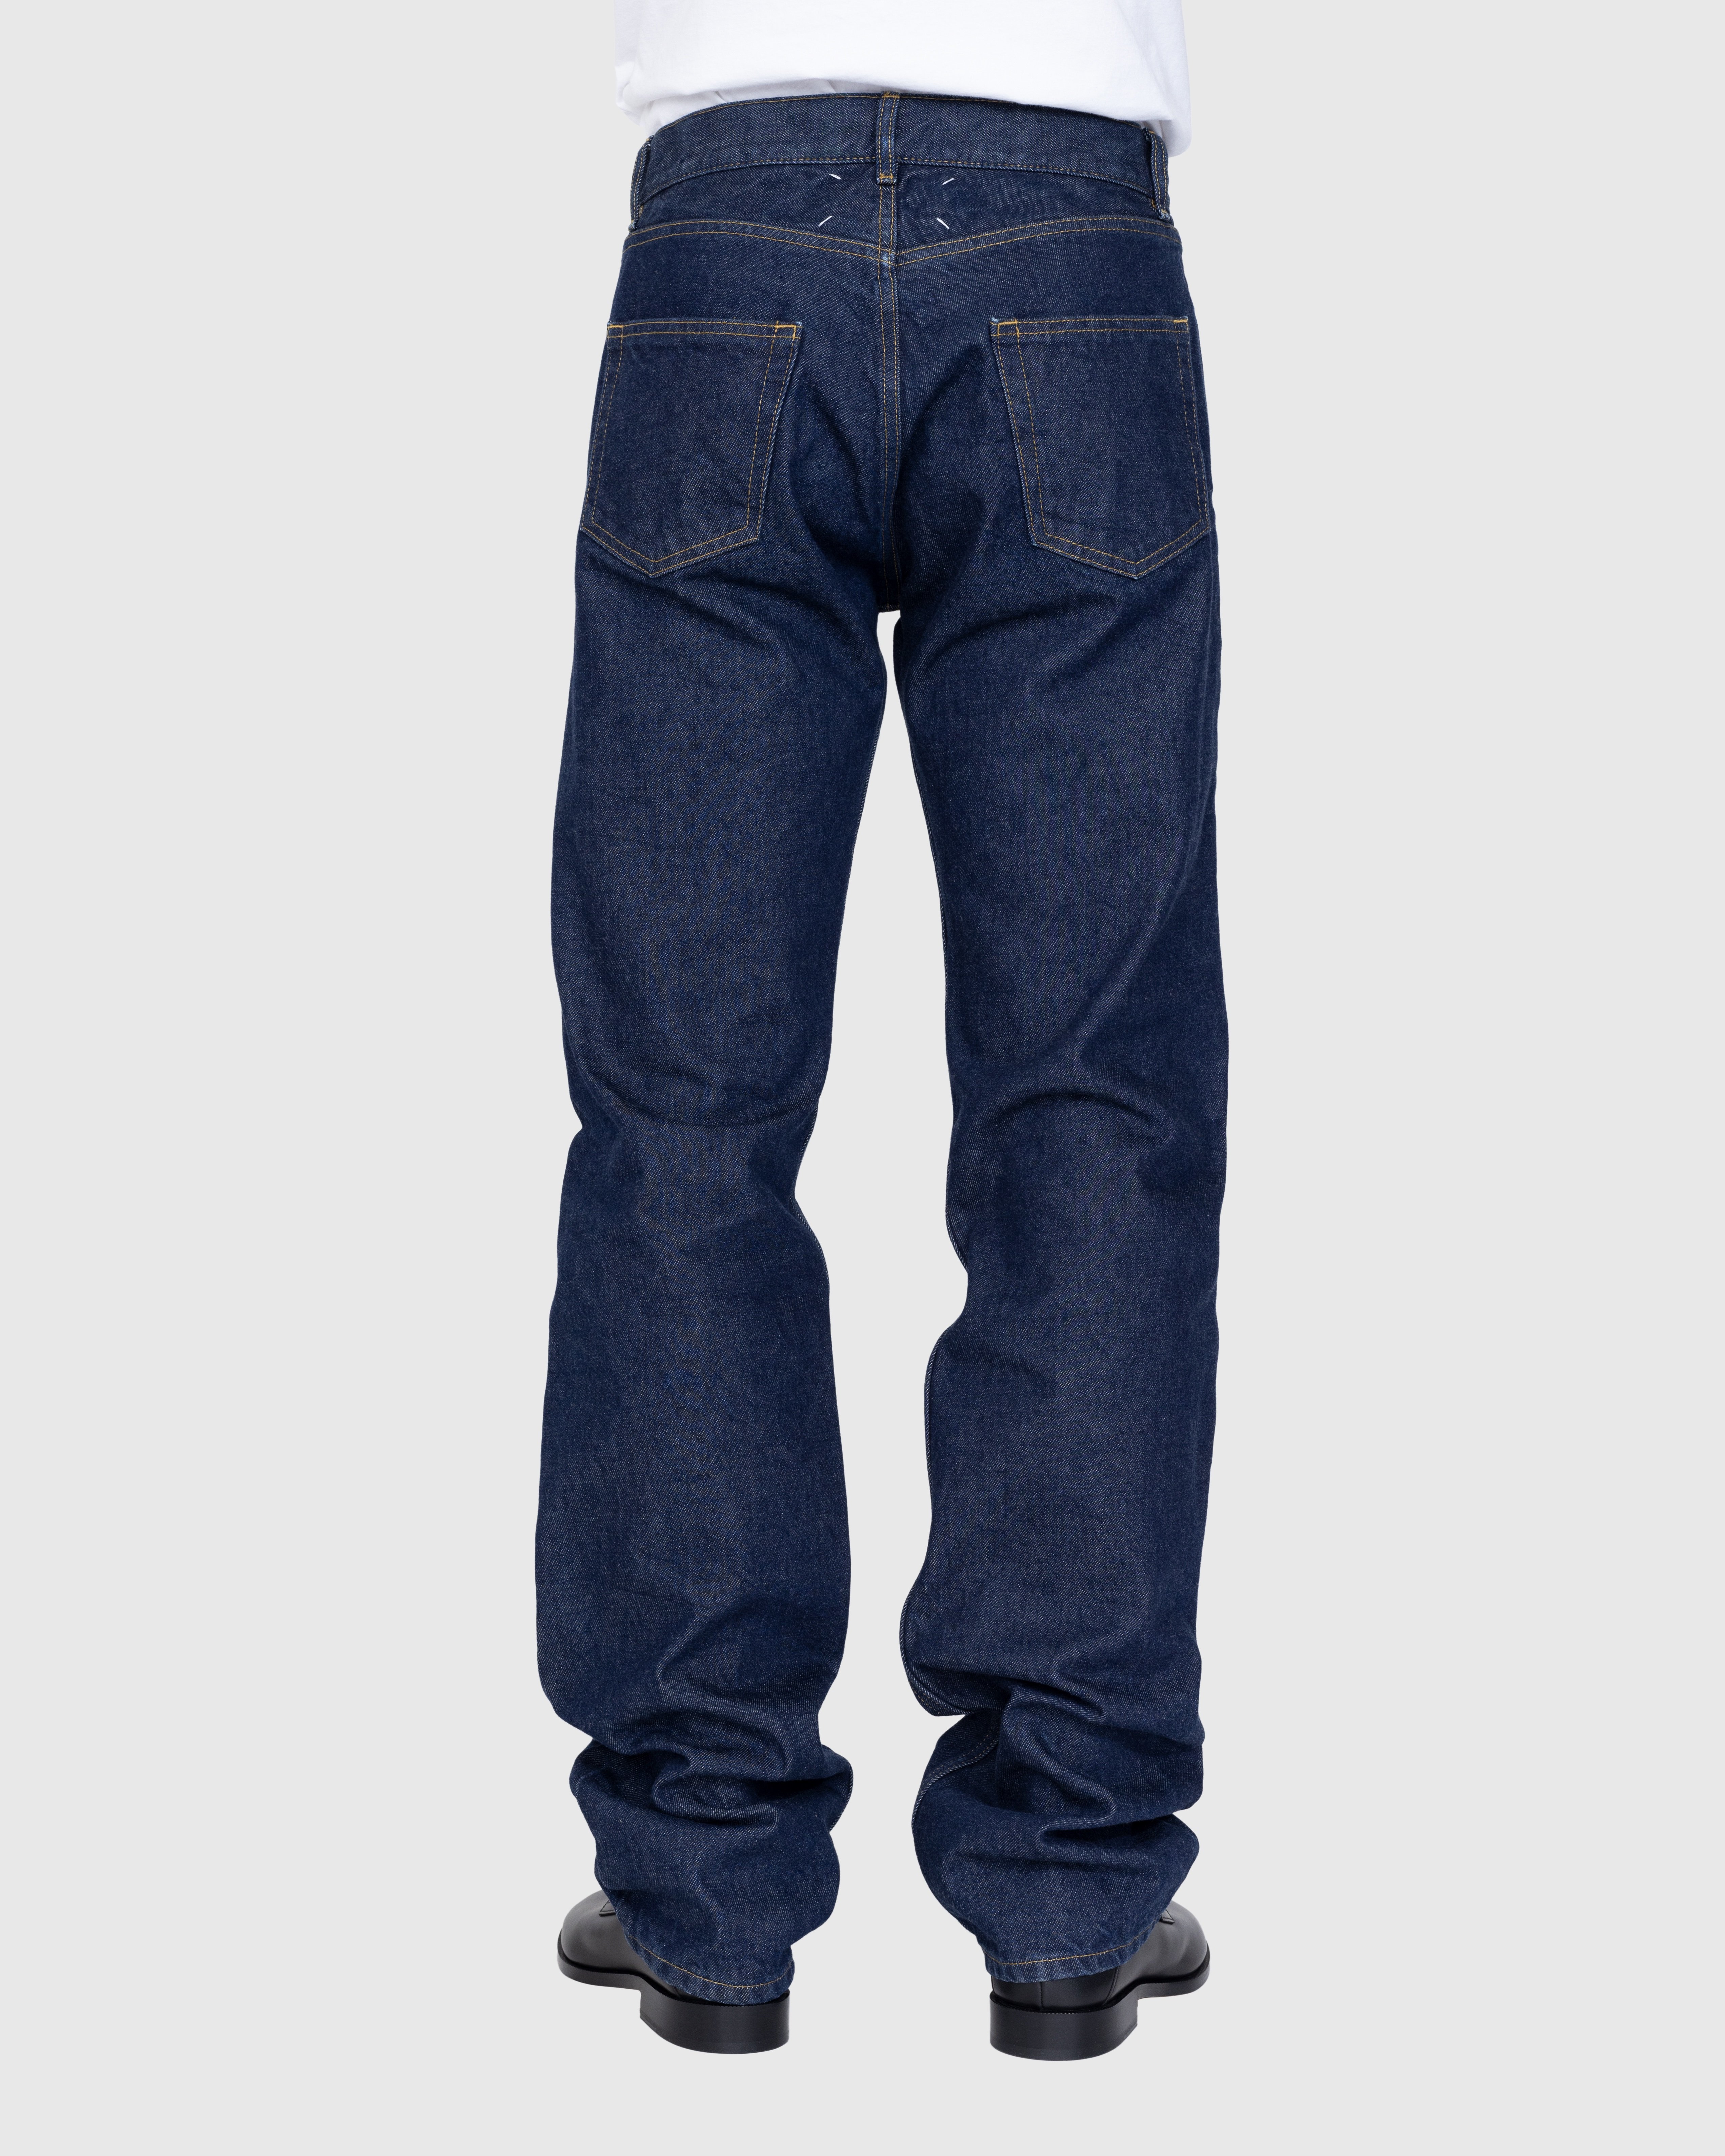 Maison Margiela - 5 Pocket Pants Indigo - Clothing - Blue - Image 4